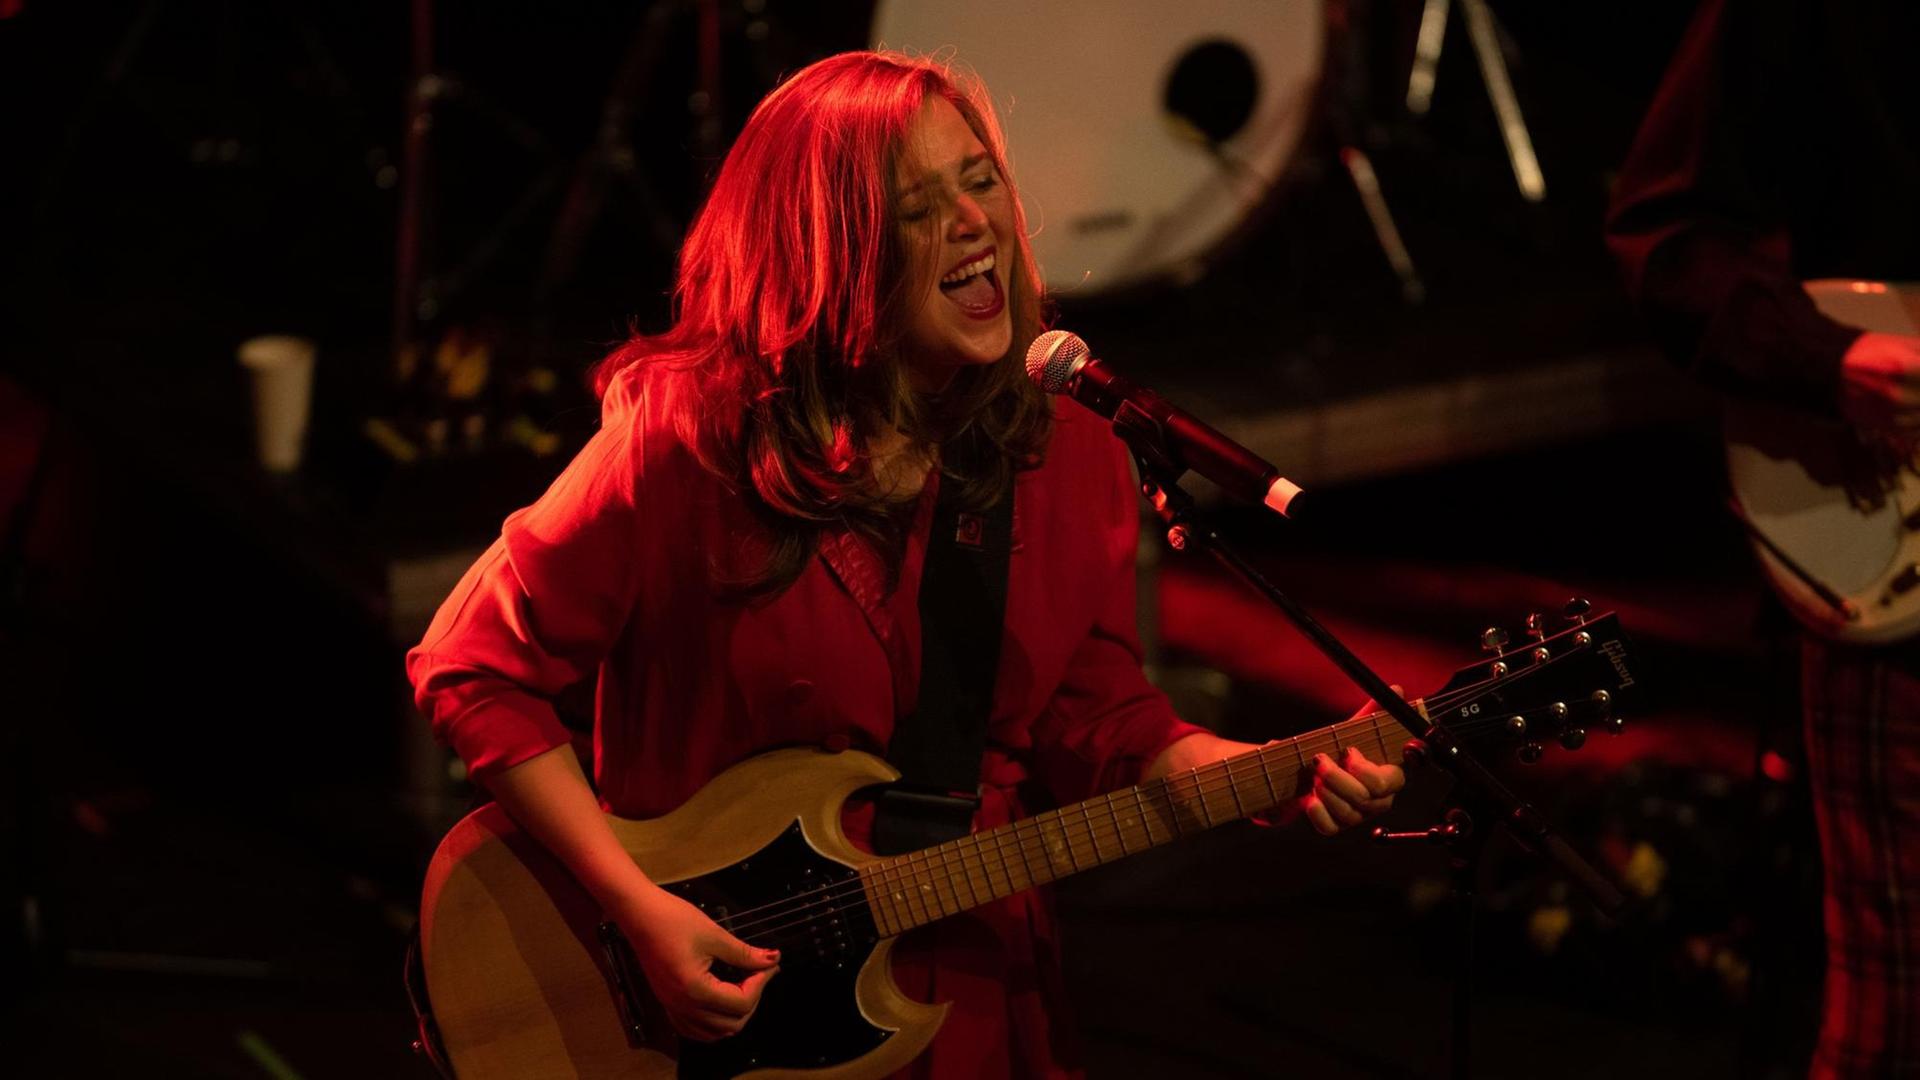 Albertine Sarges singt und spielt E-Gitarre mit langen Haaren auf einer Bühne, auf der alles in rotes Licht getaucht ist.